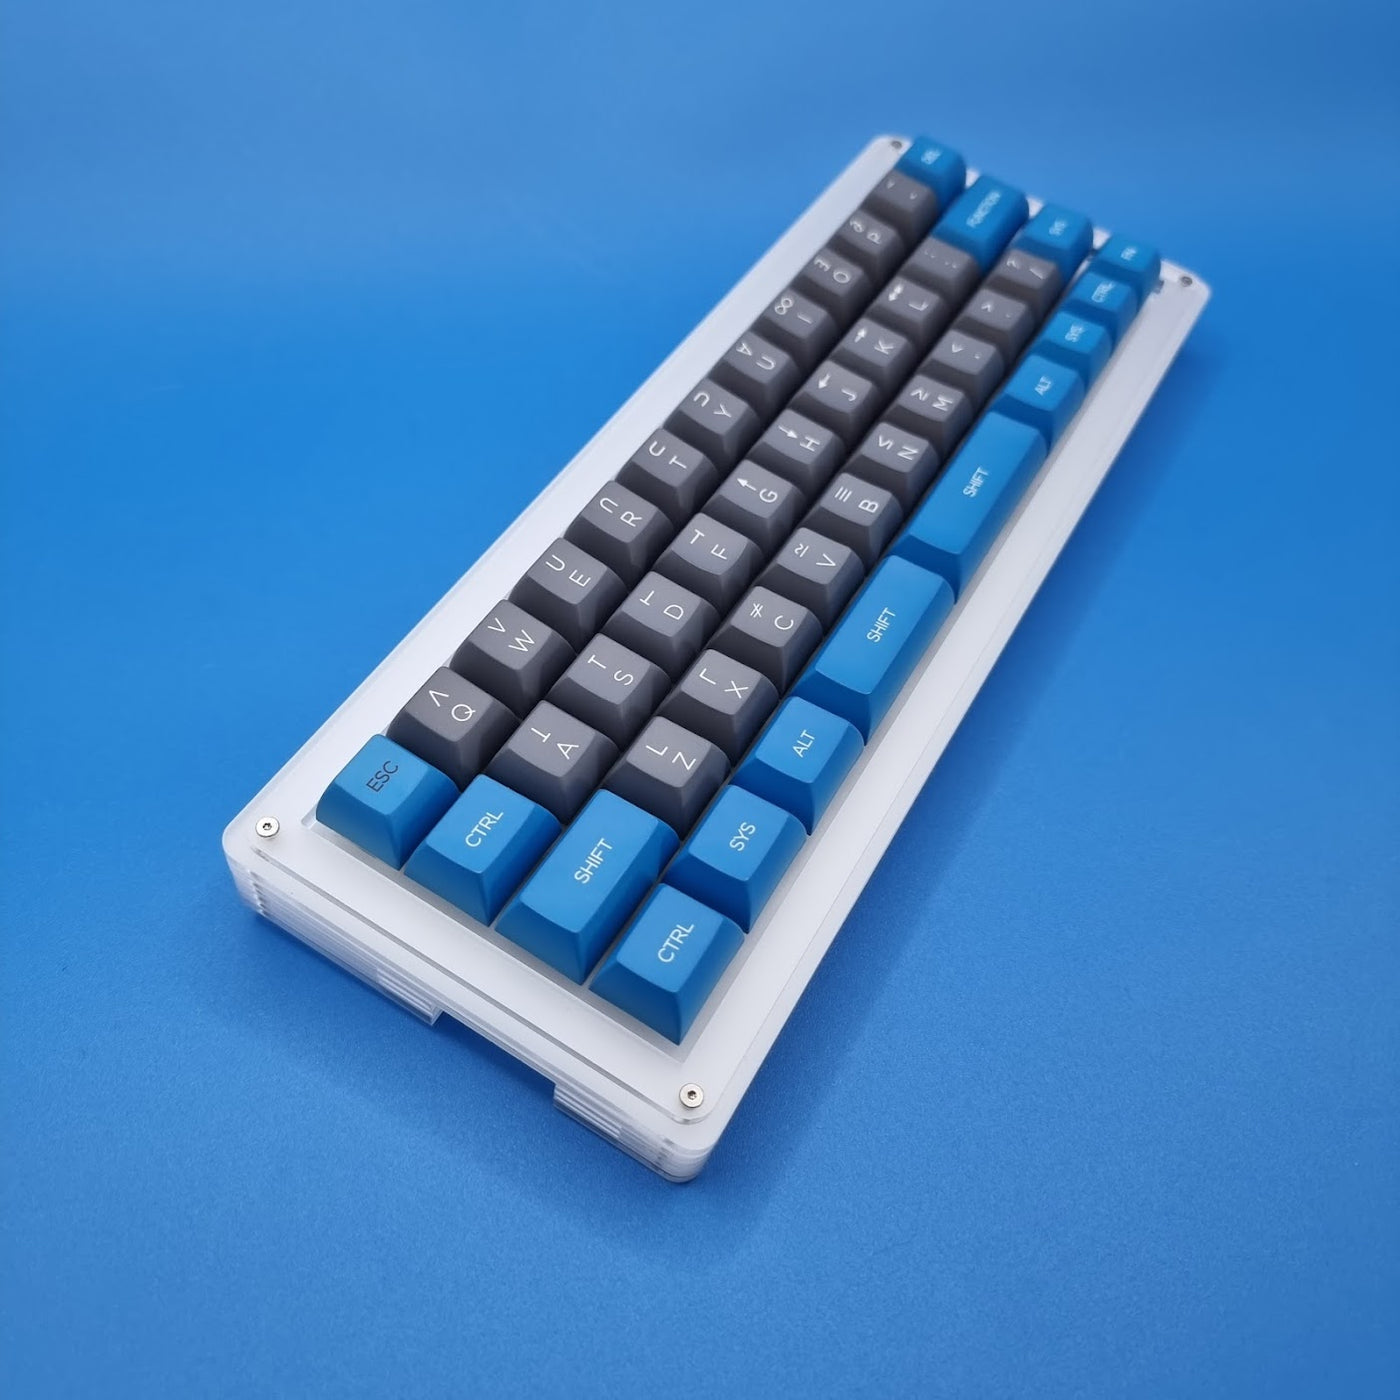 TG4X 40% Keyboard Kit